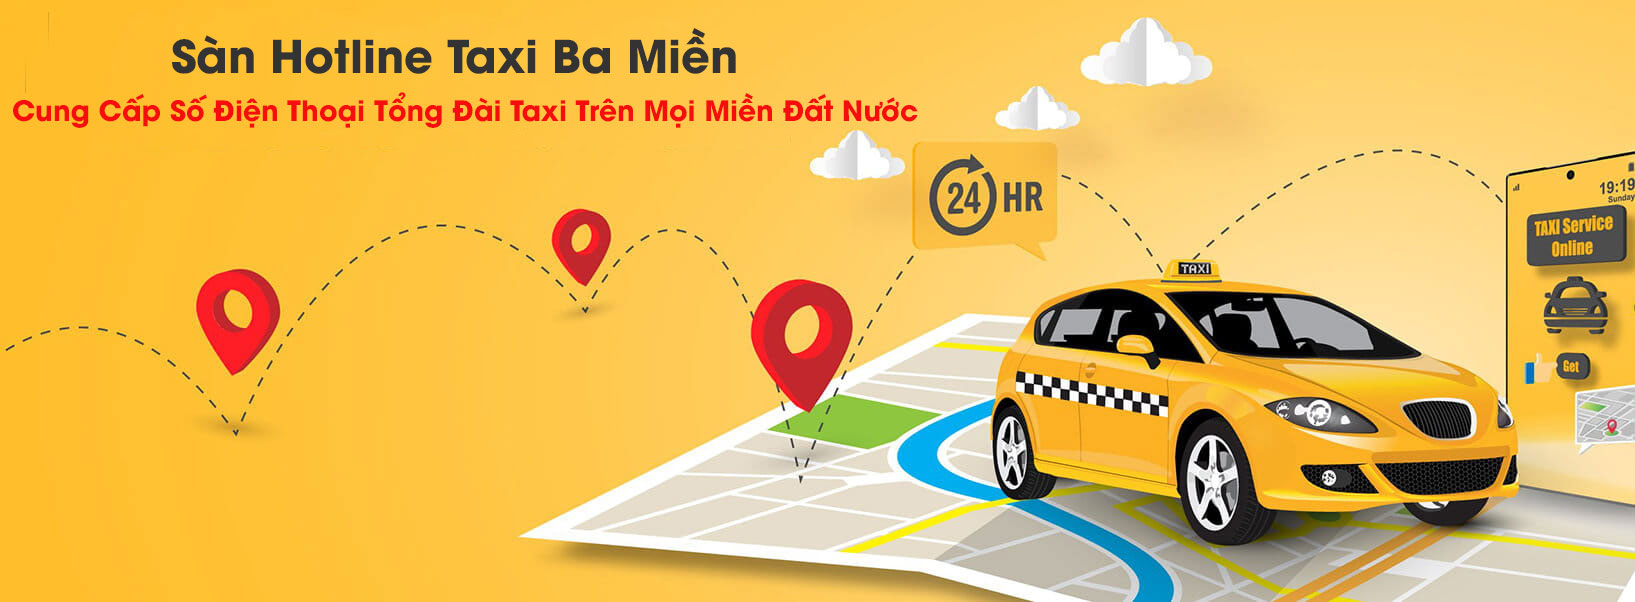 Giới thiệu về sàn Hotline Taxi Ba Miền